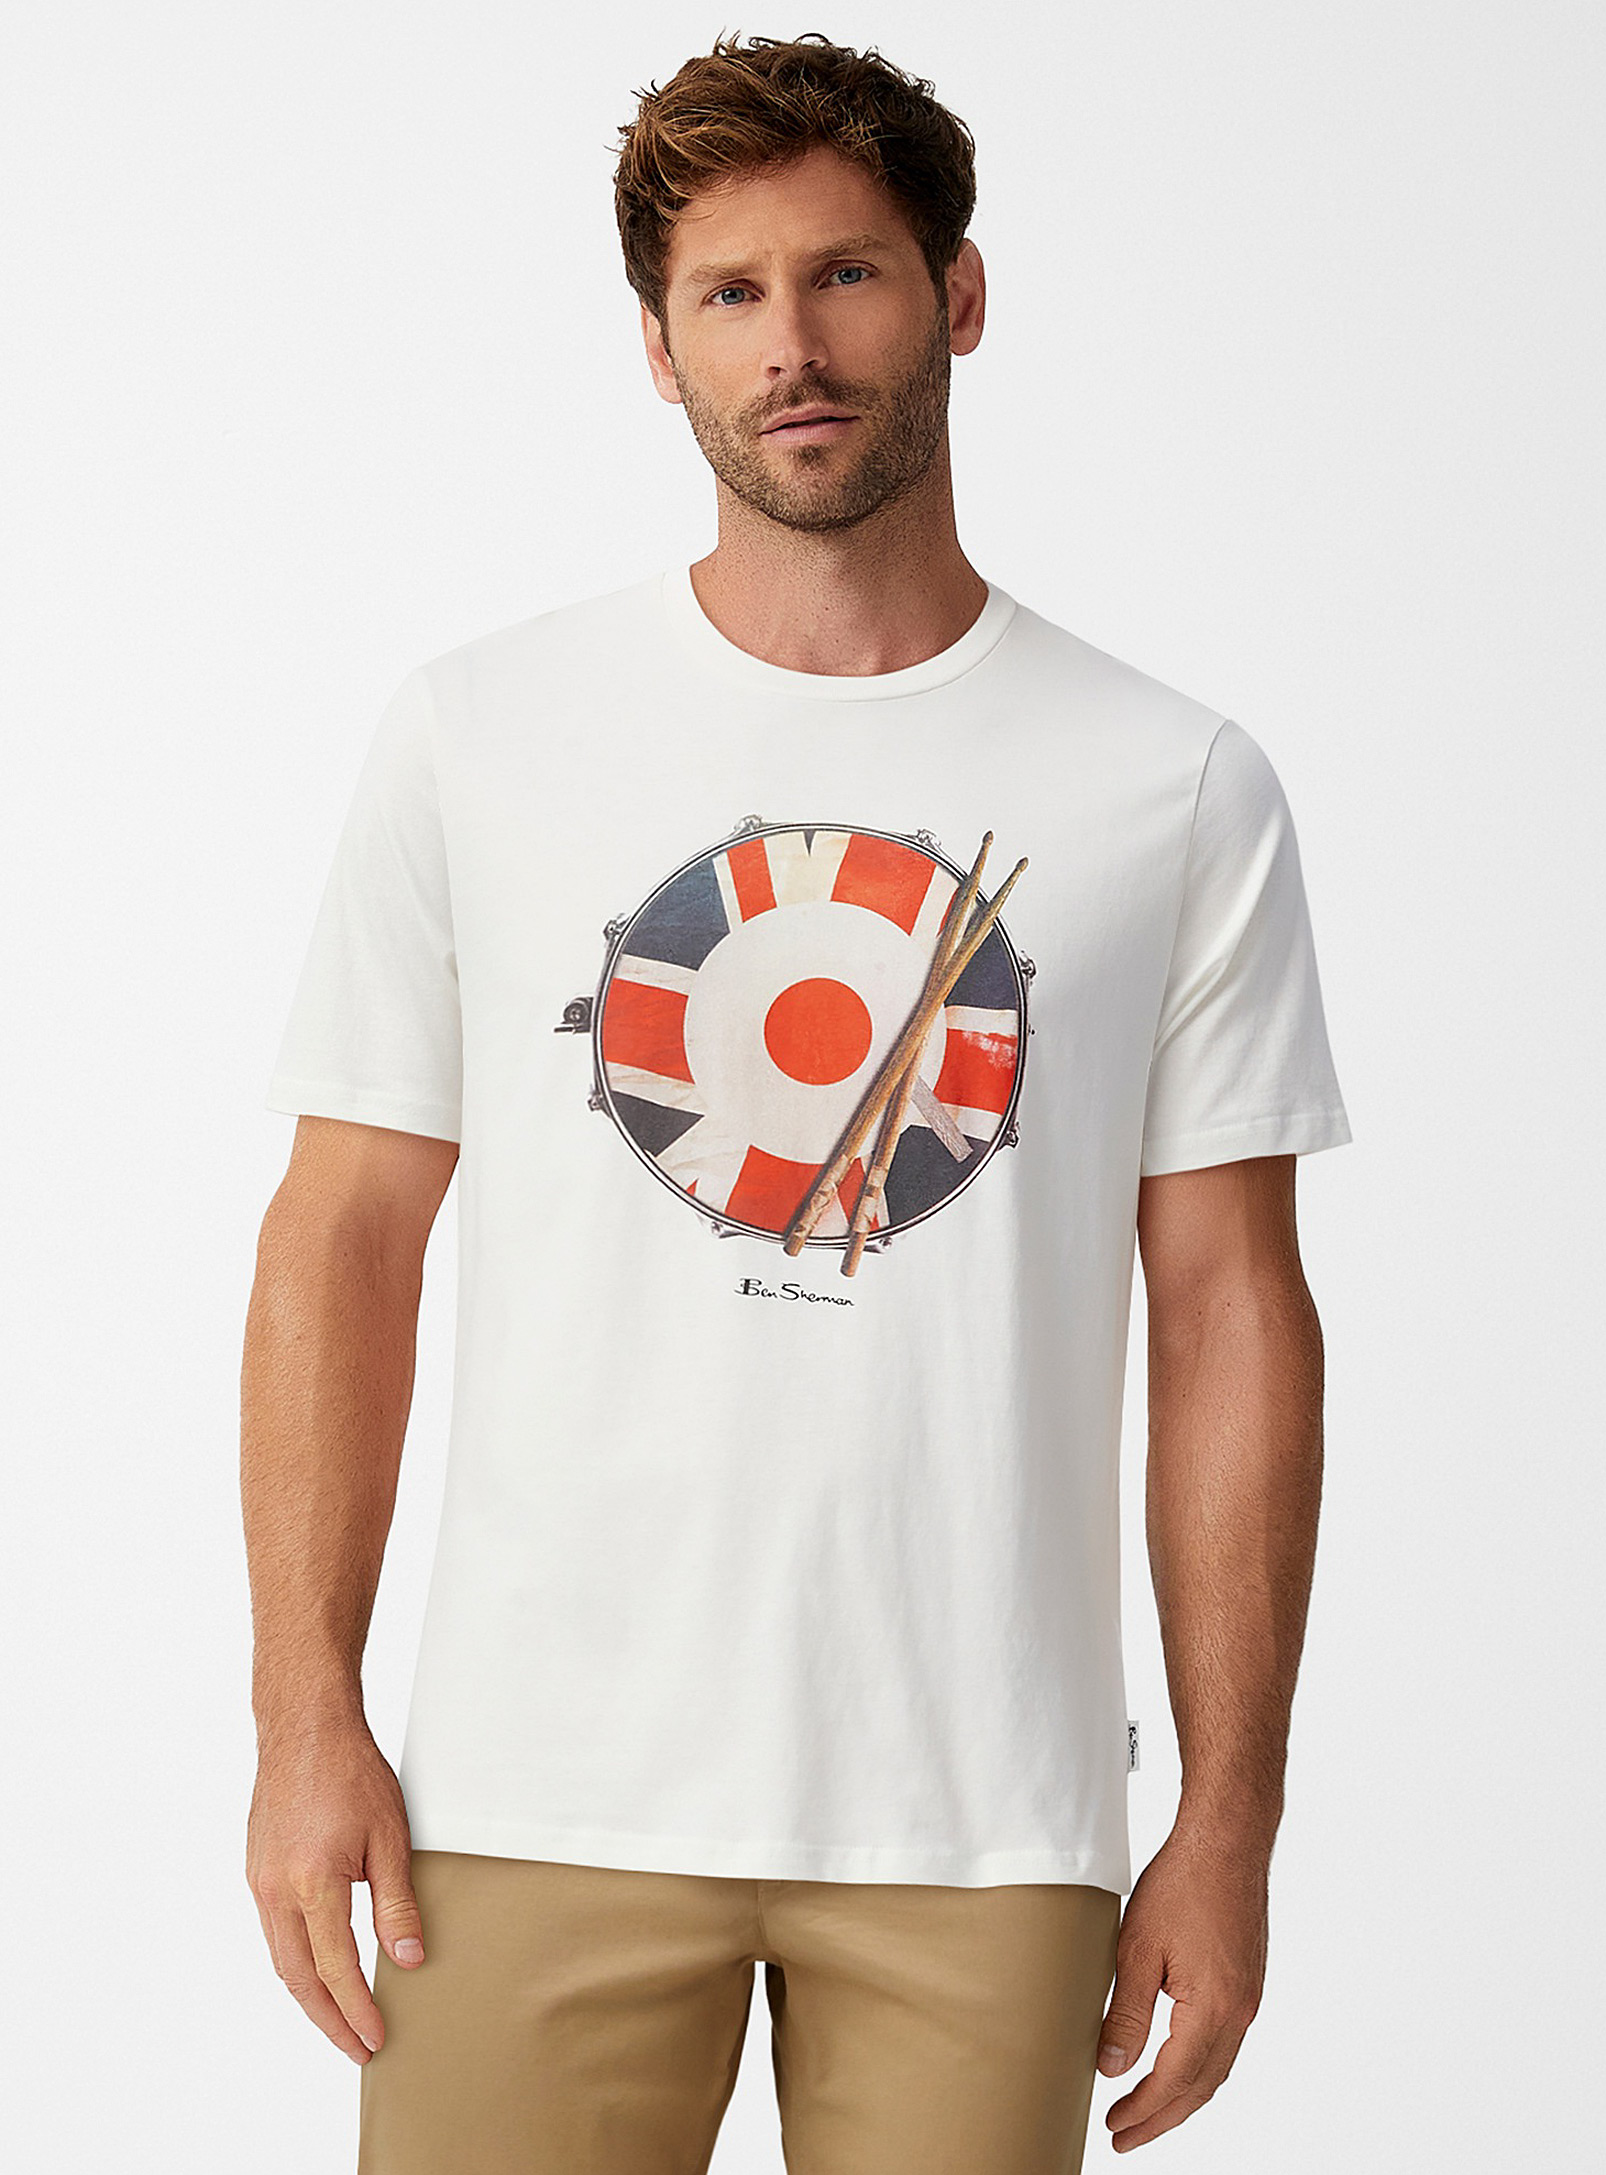 Ben Sherman - Men's British drum T-shirt